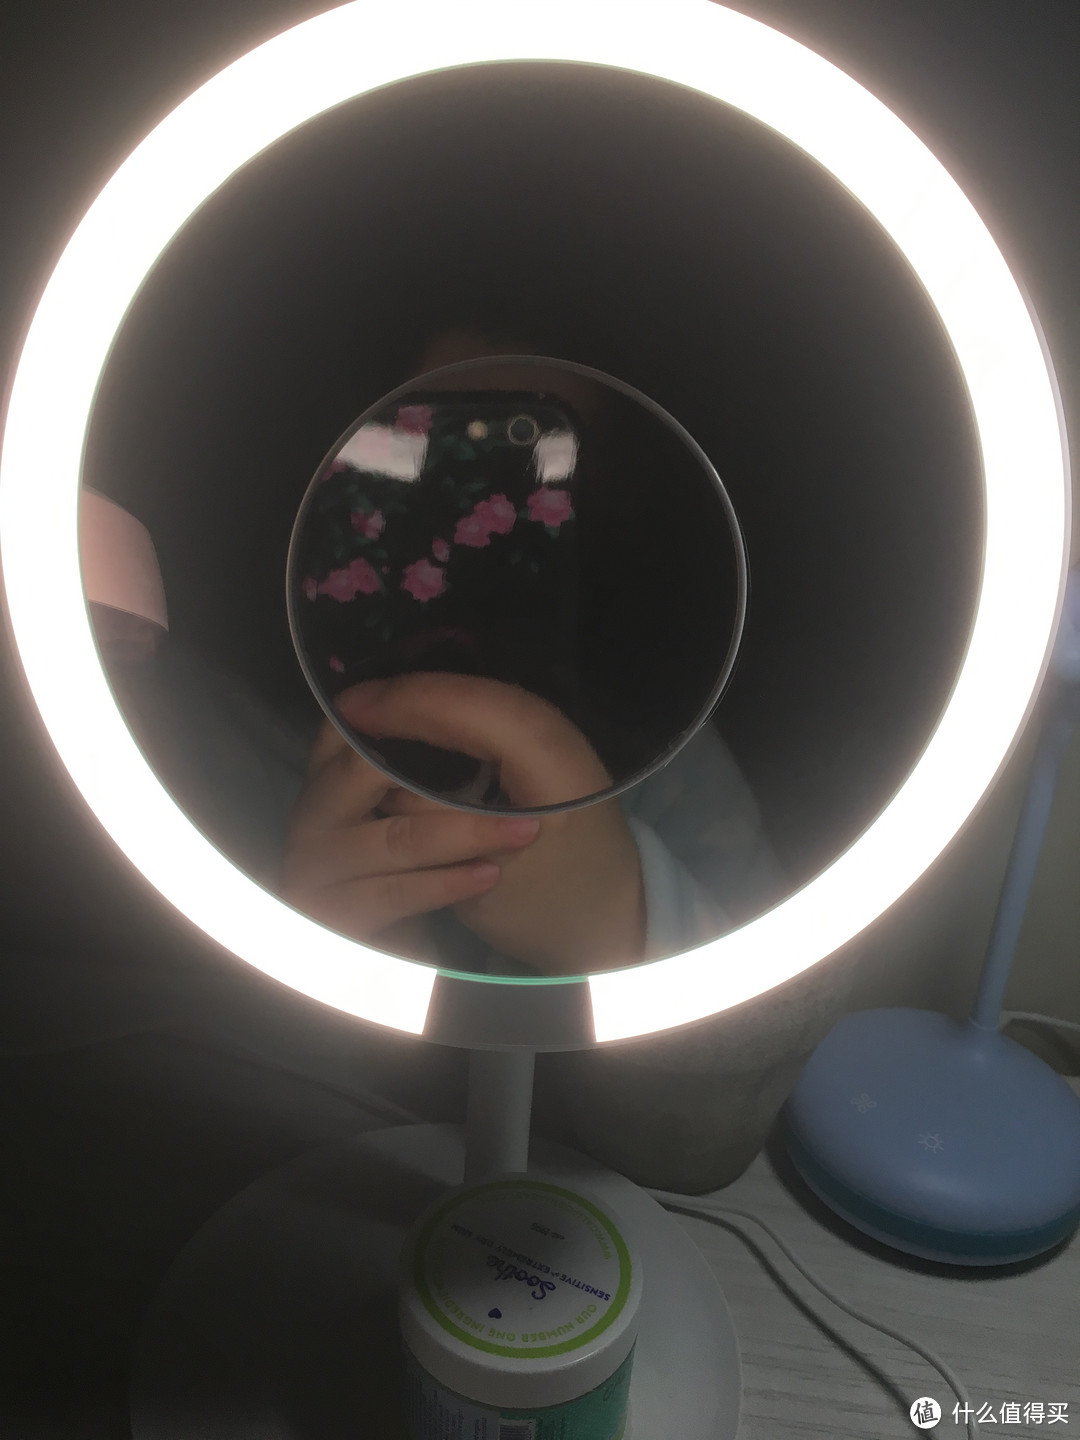 超越松下的化妆镜——AMIRO MINI系列高清日光化妆镜测评